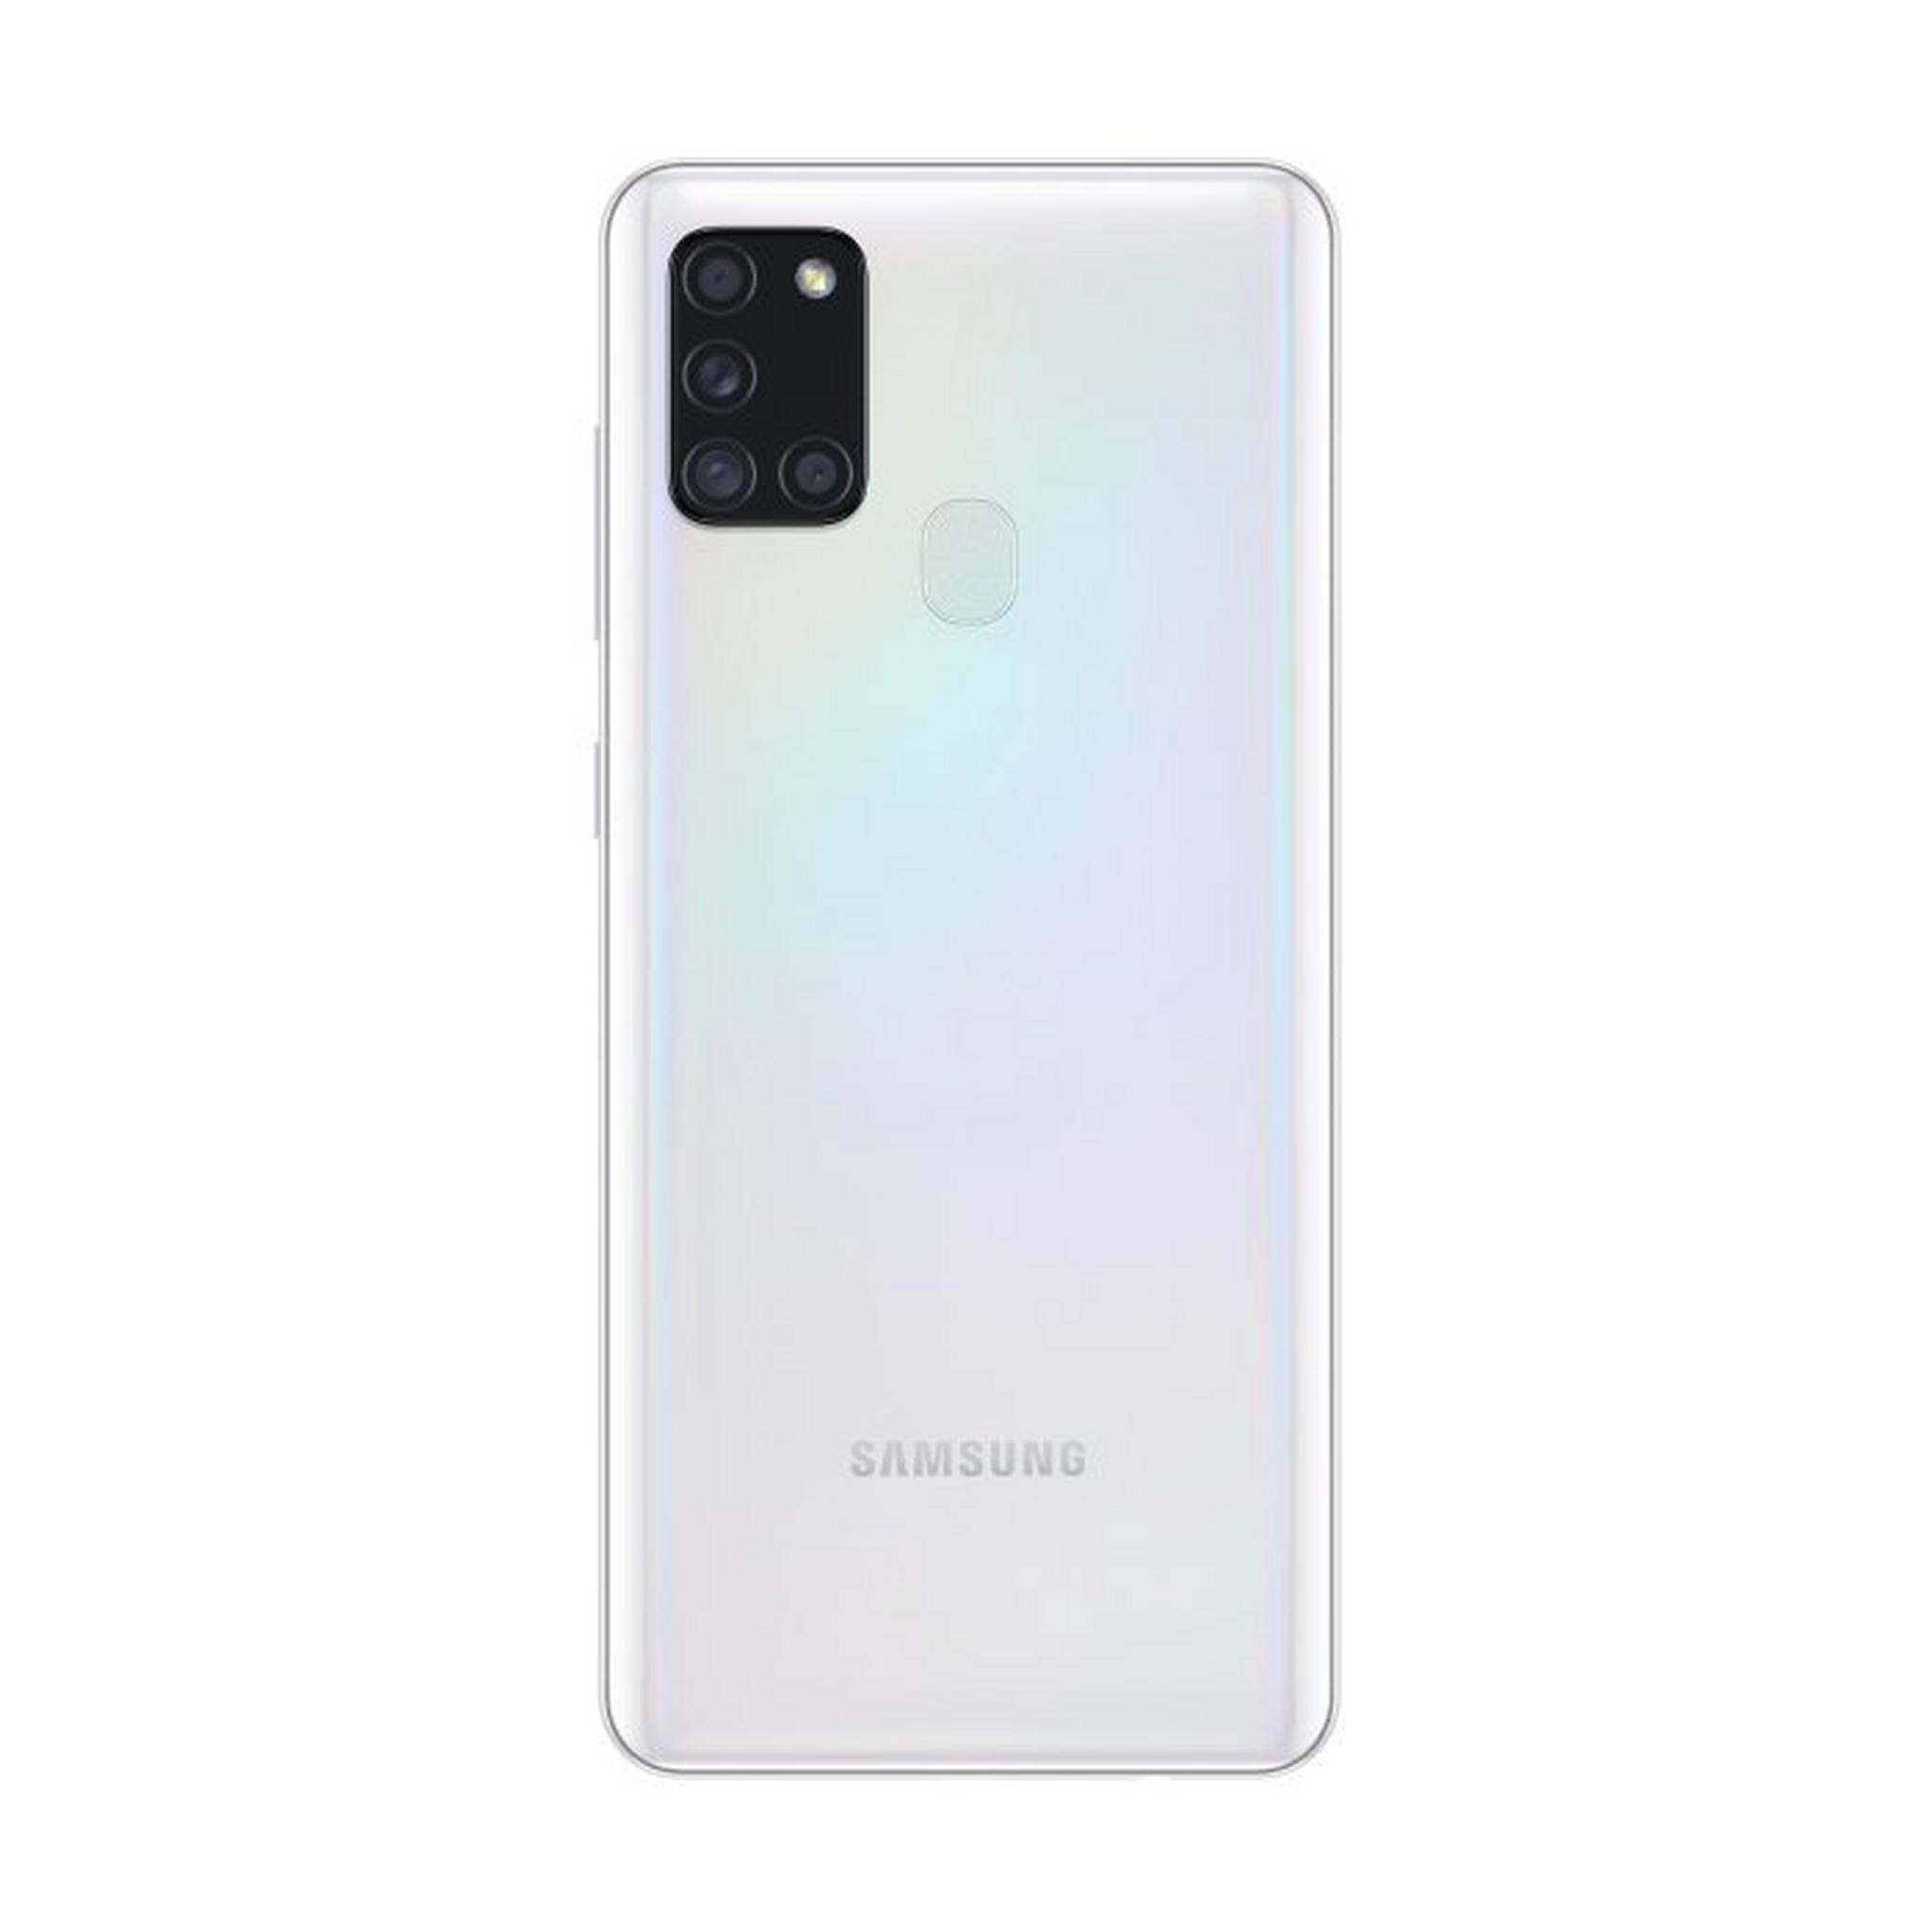 Samsung Galaxy A21s 64GB Phone - White